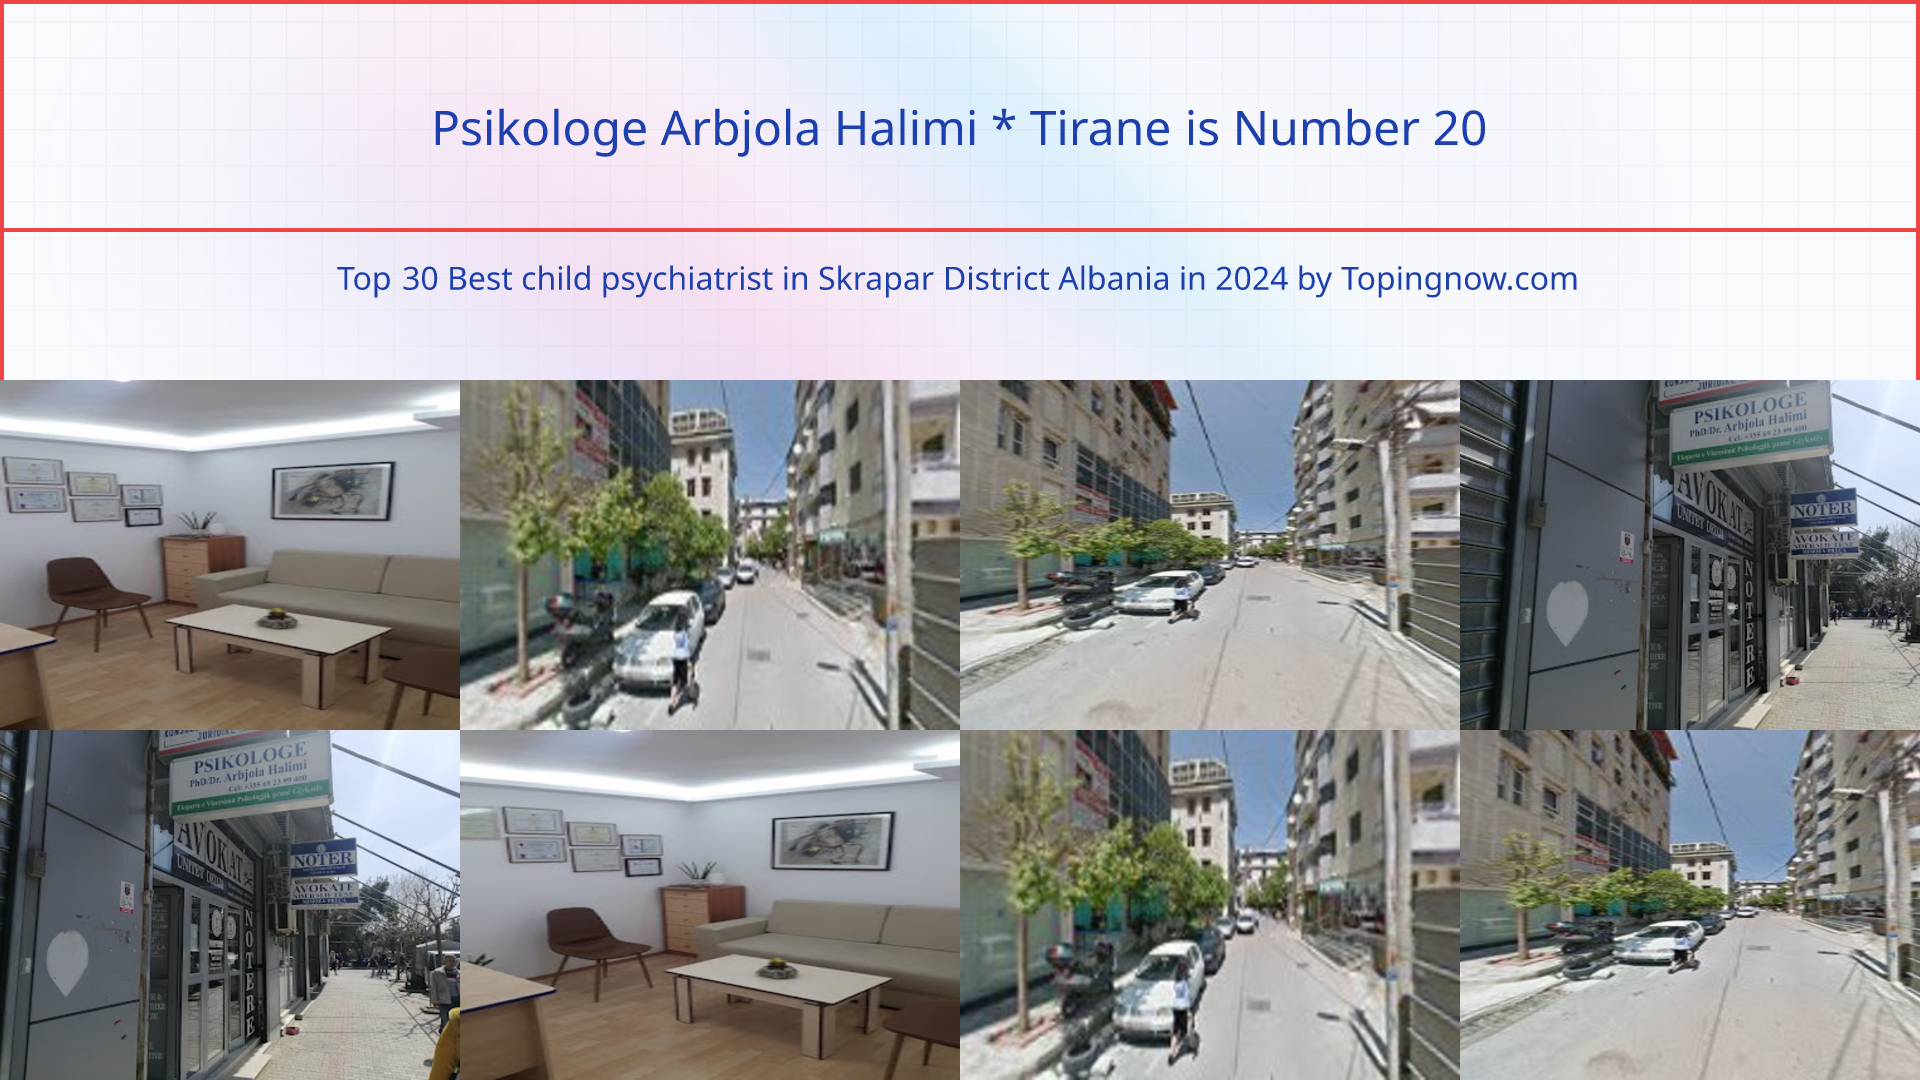 Psikologe Arbjola Halimi * Tirane: Top 30 Best child psychiatrist in Skrapar District Albania in 2024